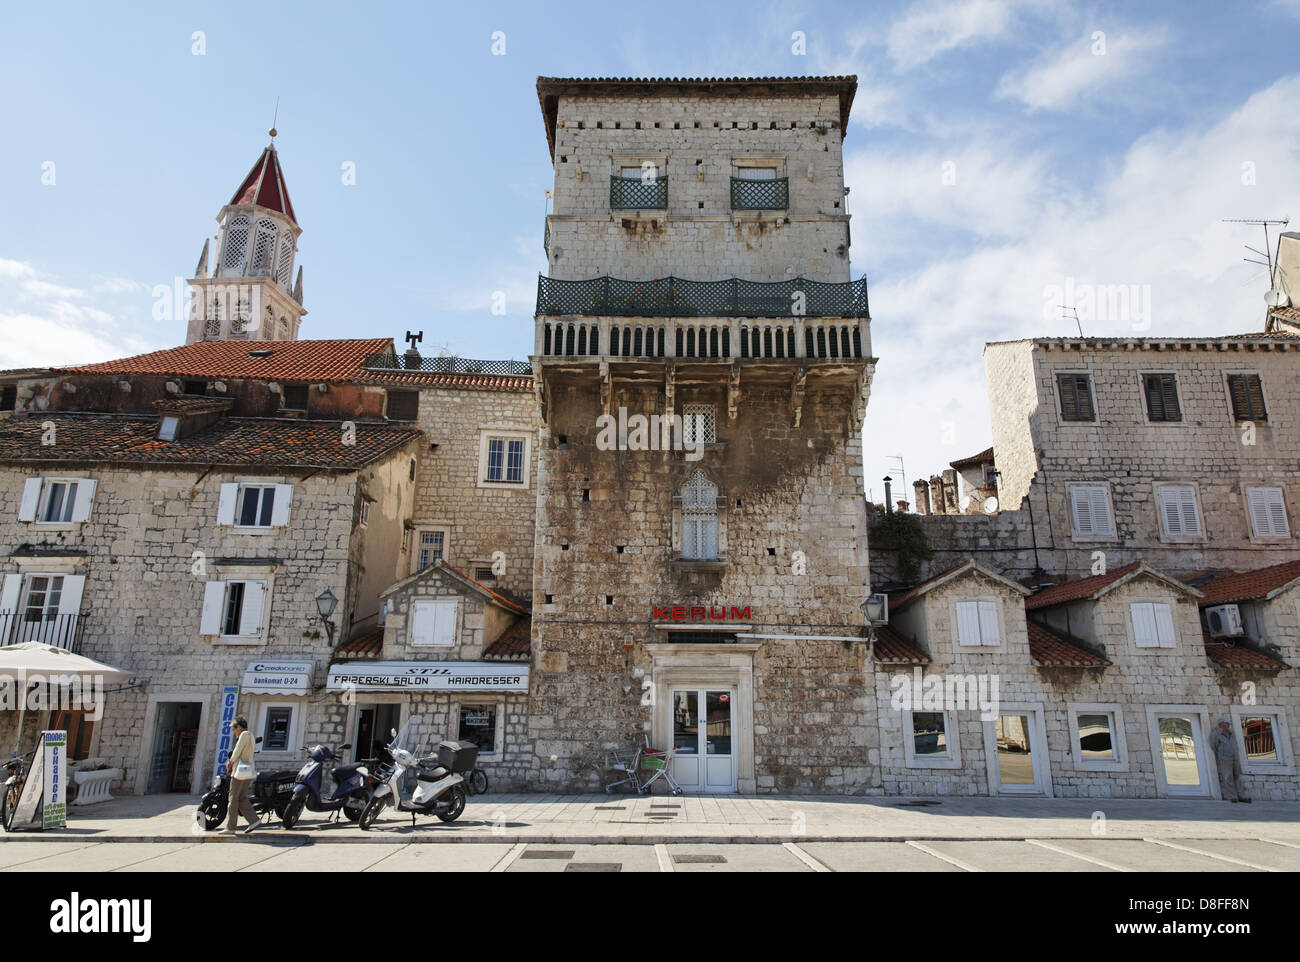 Croatia, Dalmatia, Trogir, UNESCO; Vitturi Tower, Kroatien, Dalmatien, Trogir, UNESCO Welterbe; Vitturi Turm Stock Photo